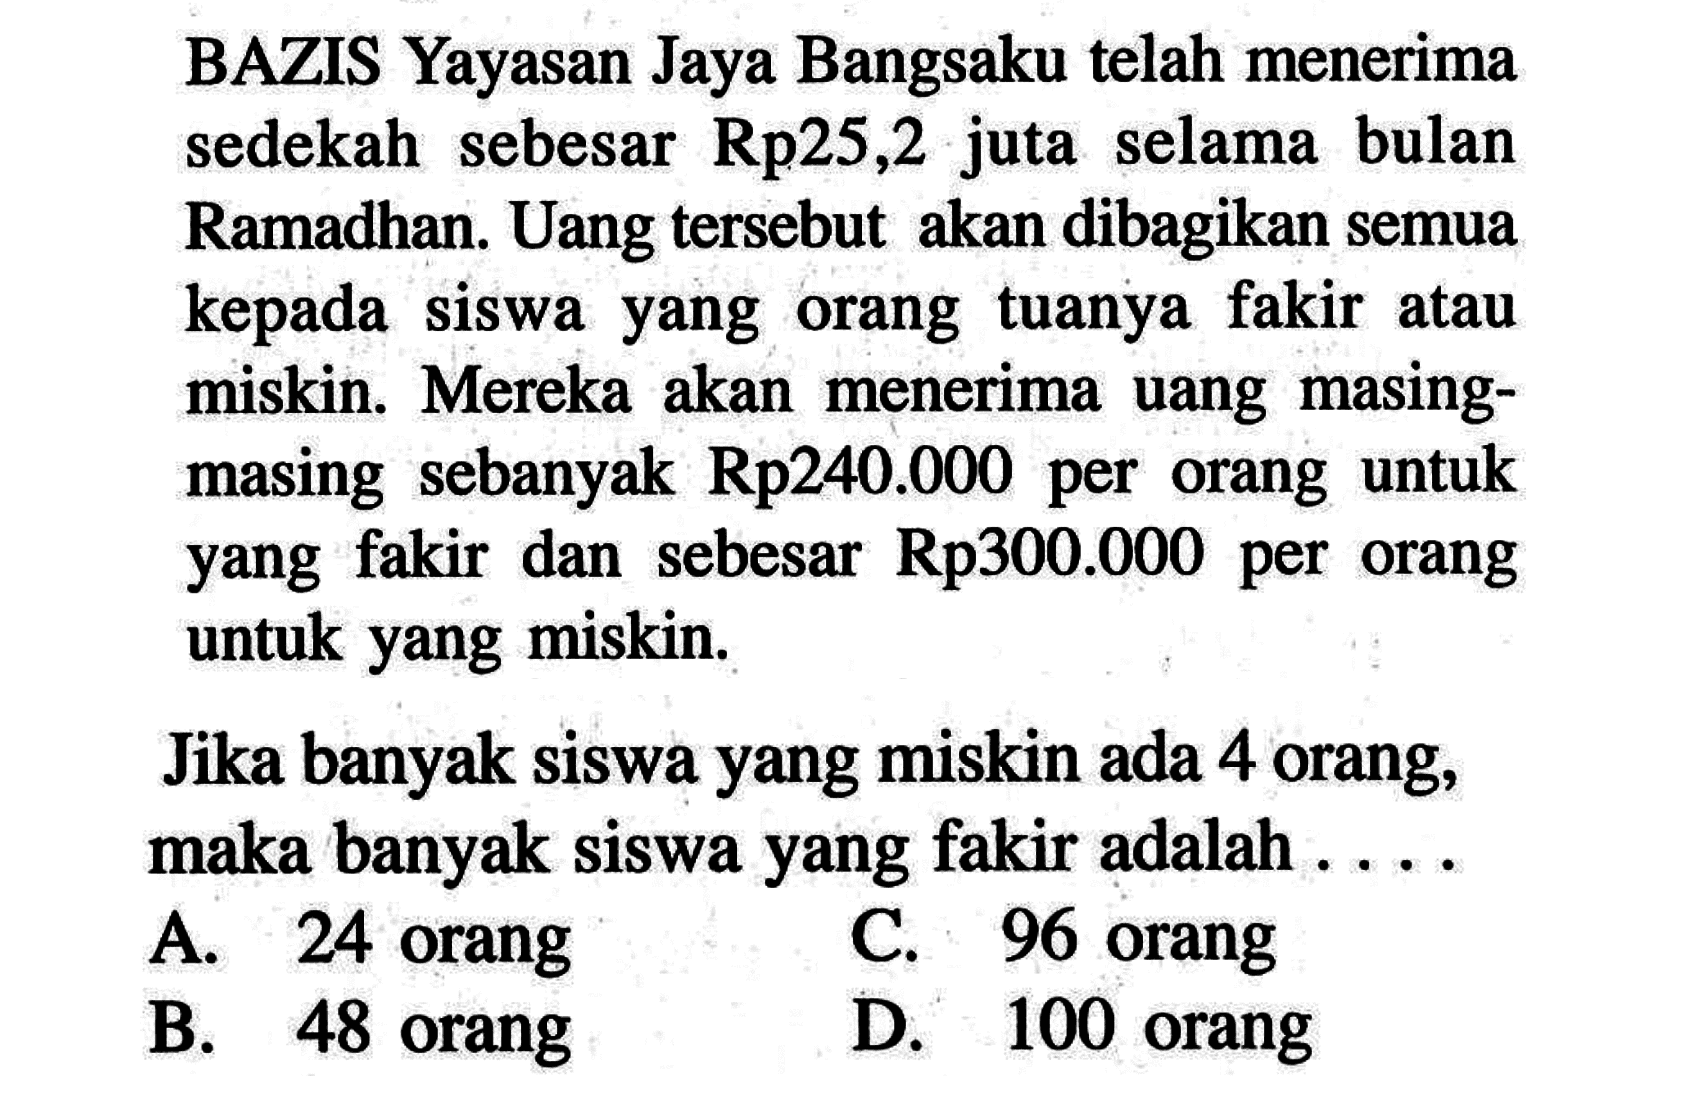 BAZIS Yayasan Jaya Bangsaku telah menerima sedekah sebesar Rp25,2 juta selama bulan Ramadhan. Uang tersebut  akan dibagikan semua kepada siswa yang orang tuanya fakir atau uang  masing-miskin. Mereka akan menerima masing sebanyak Rp240.000 per  orang untuk yang fakir dan sebesar Rp300.0000 per orang untuk yang miskin. Jika banyak siswa yang miskin ada 4 orang; maka banyak siswa yang fakir adalah . . . .